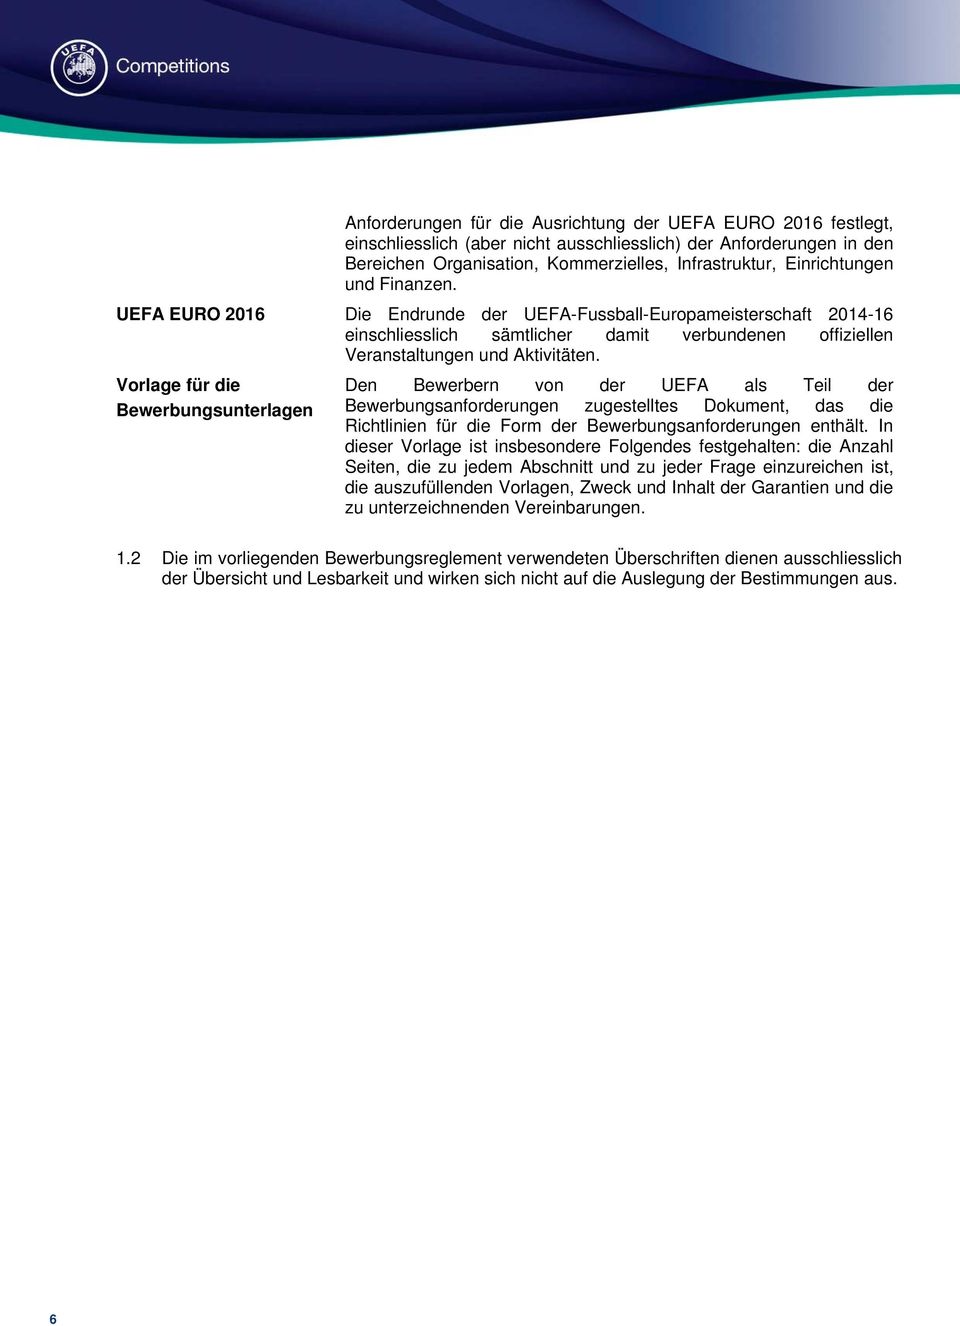 Vorlage für die Bewerbungsunterlagen Den Bewerbern von der UEFA als Teil der Bewerbungsanforderungen zugestelltes Dokument, das die Richtlinien für die Form der Bewerbungsanforderungen enthält.